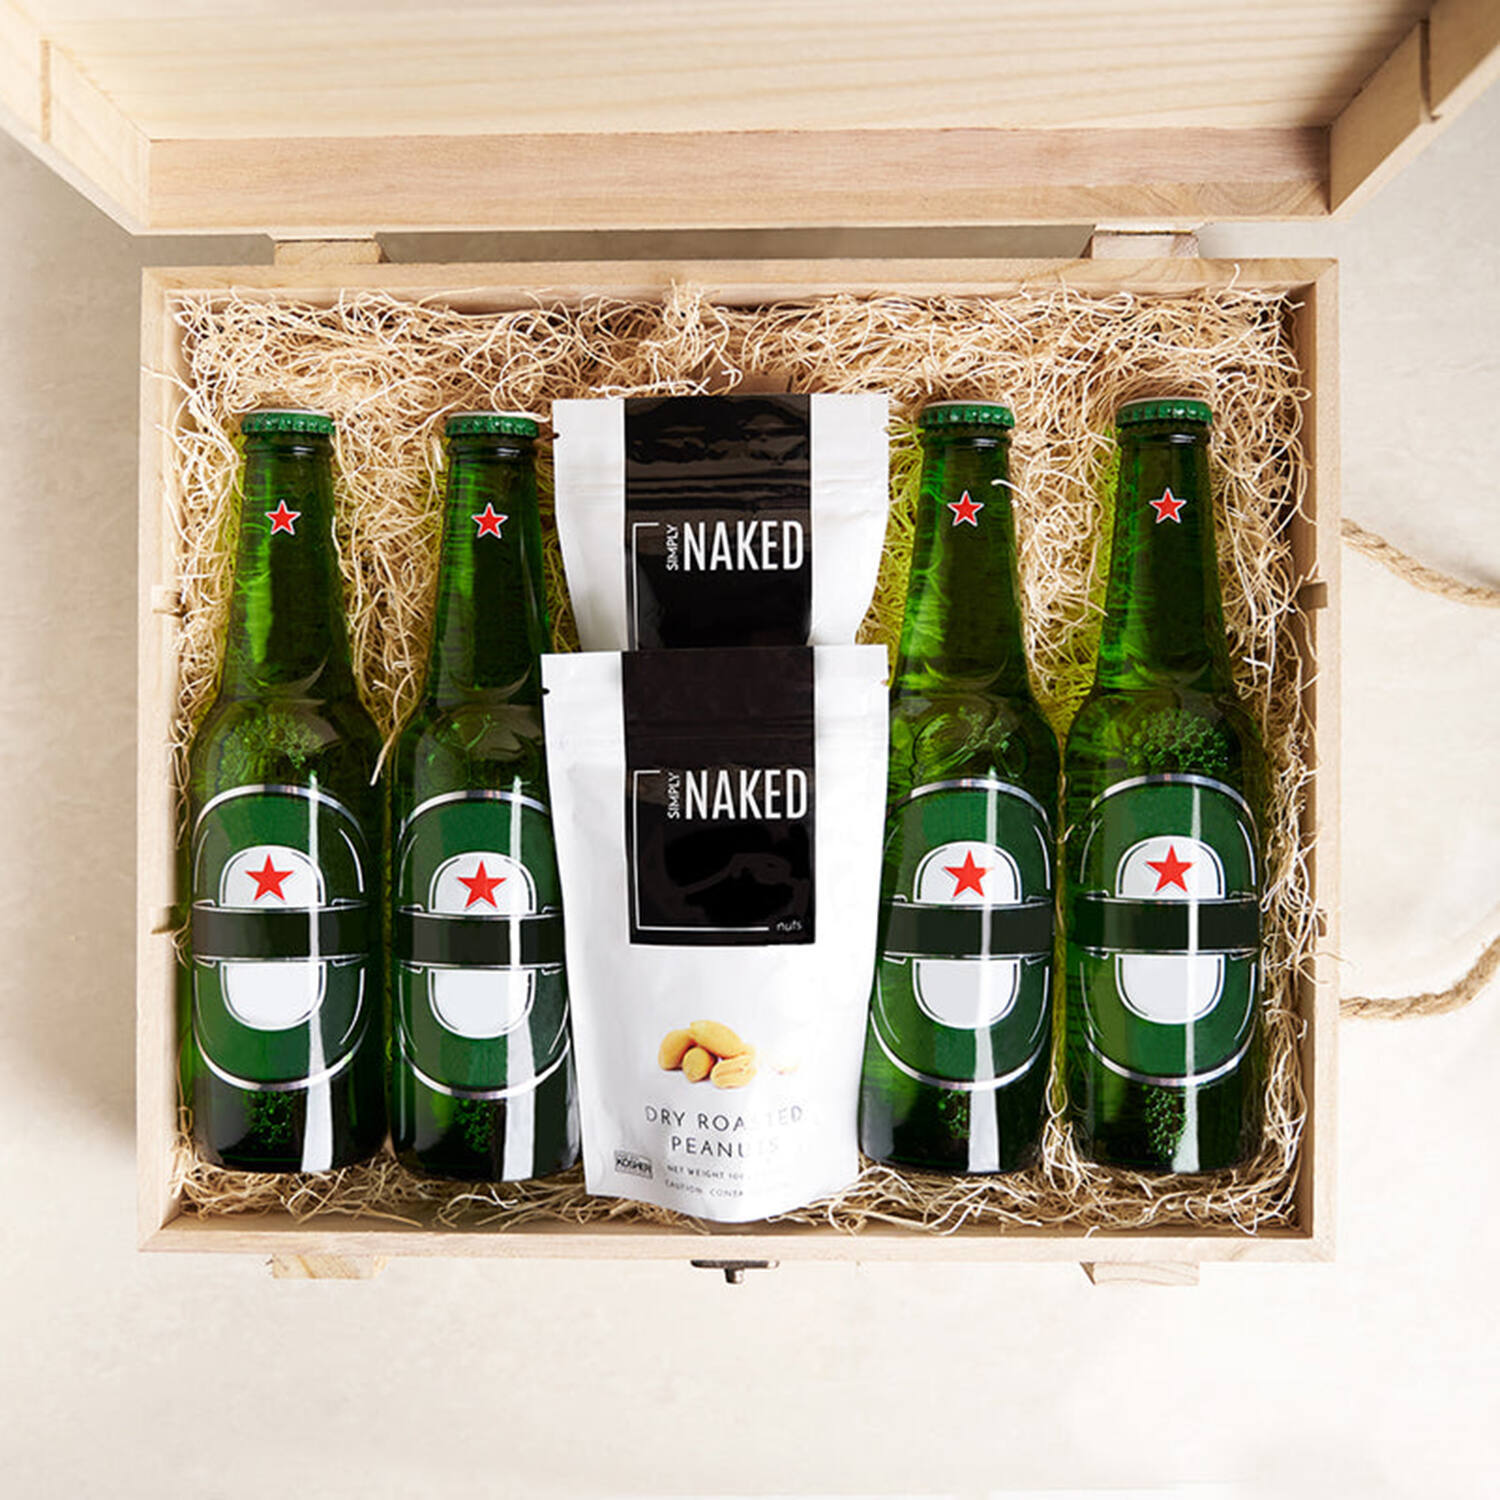 Hay Hampers Beer Gift Hamper – Beer & Snacks Gifts for Men & Women, Cheese  & Beer Hampers, Hamper Gift : Amazon.co.uk: Grocery